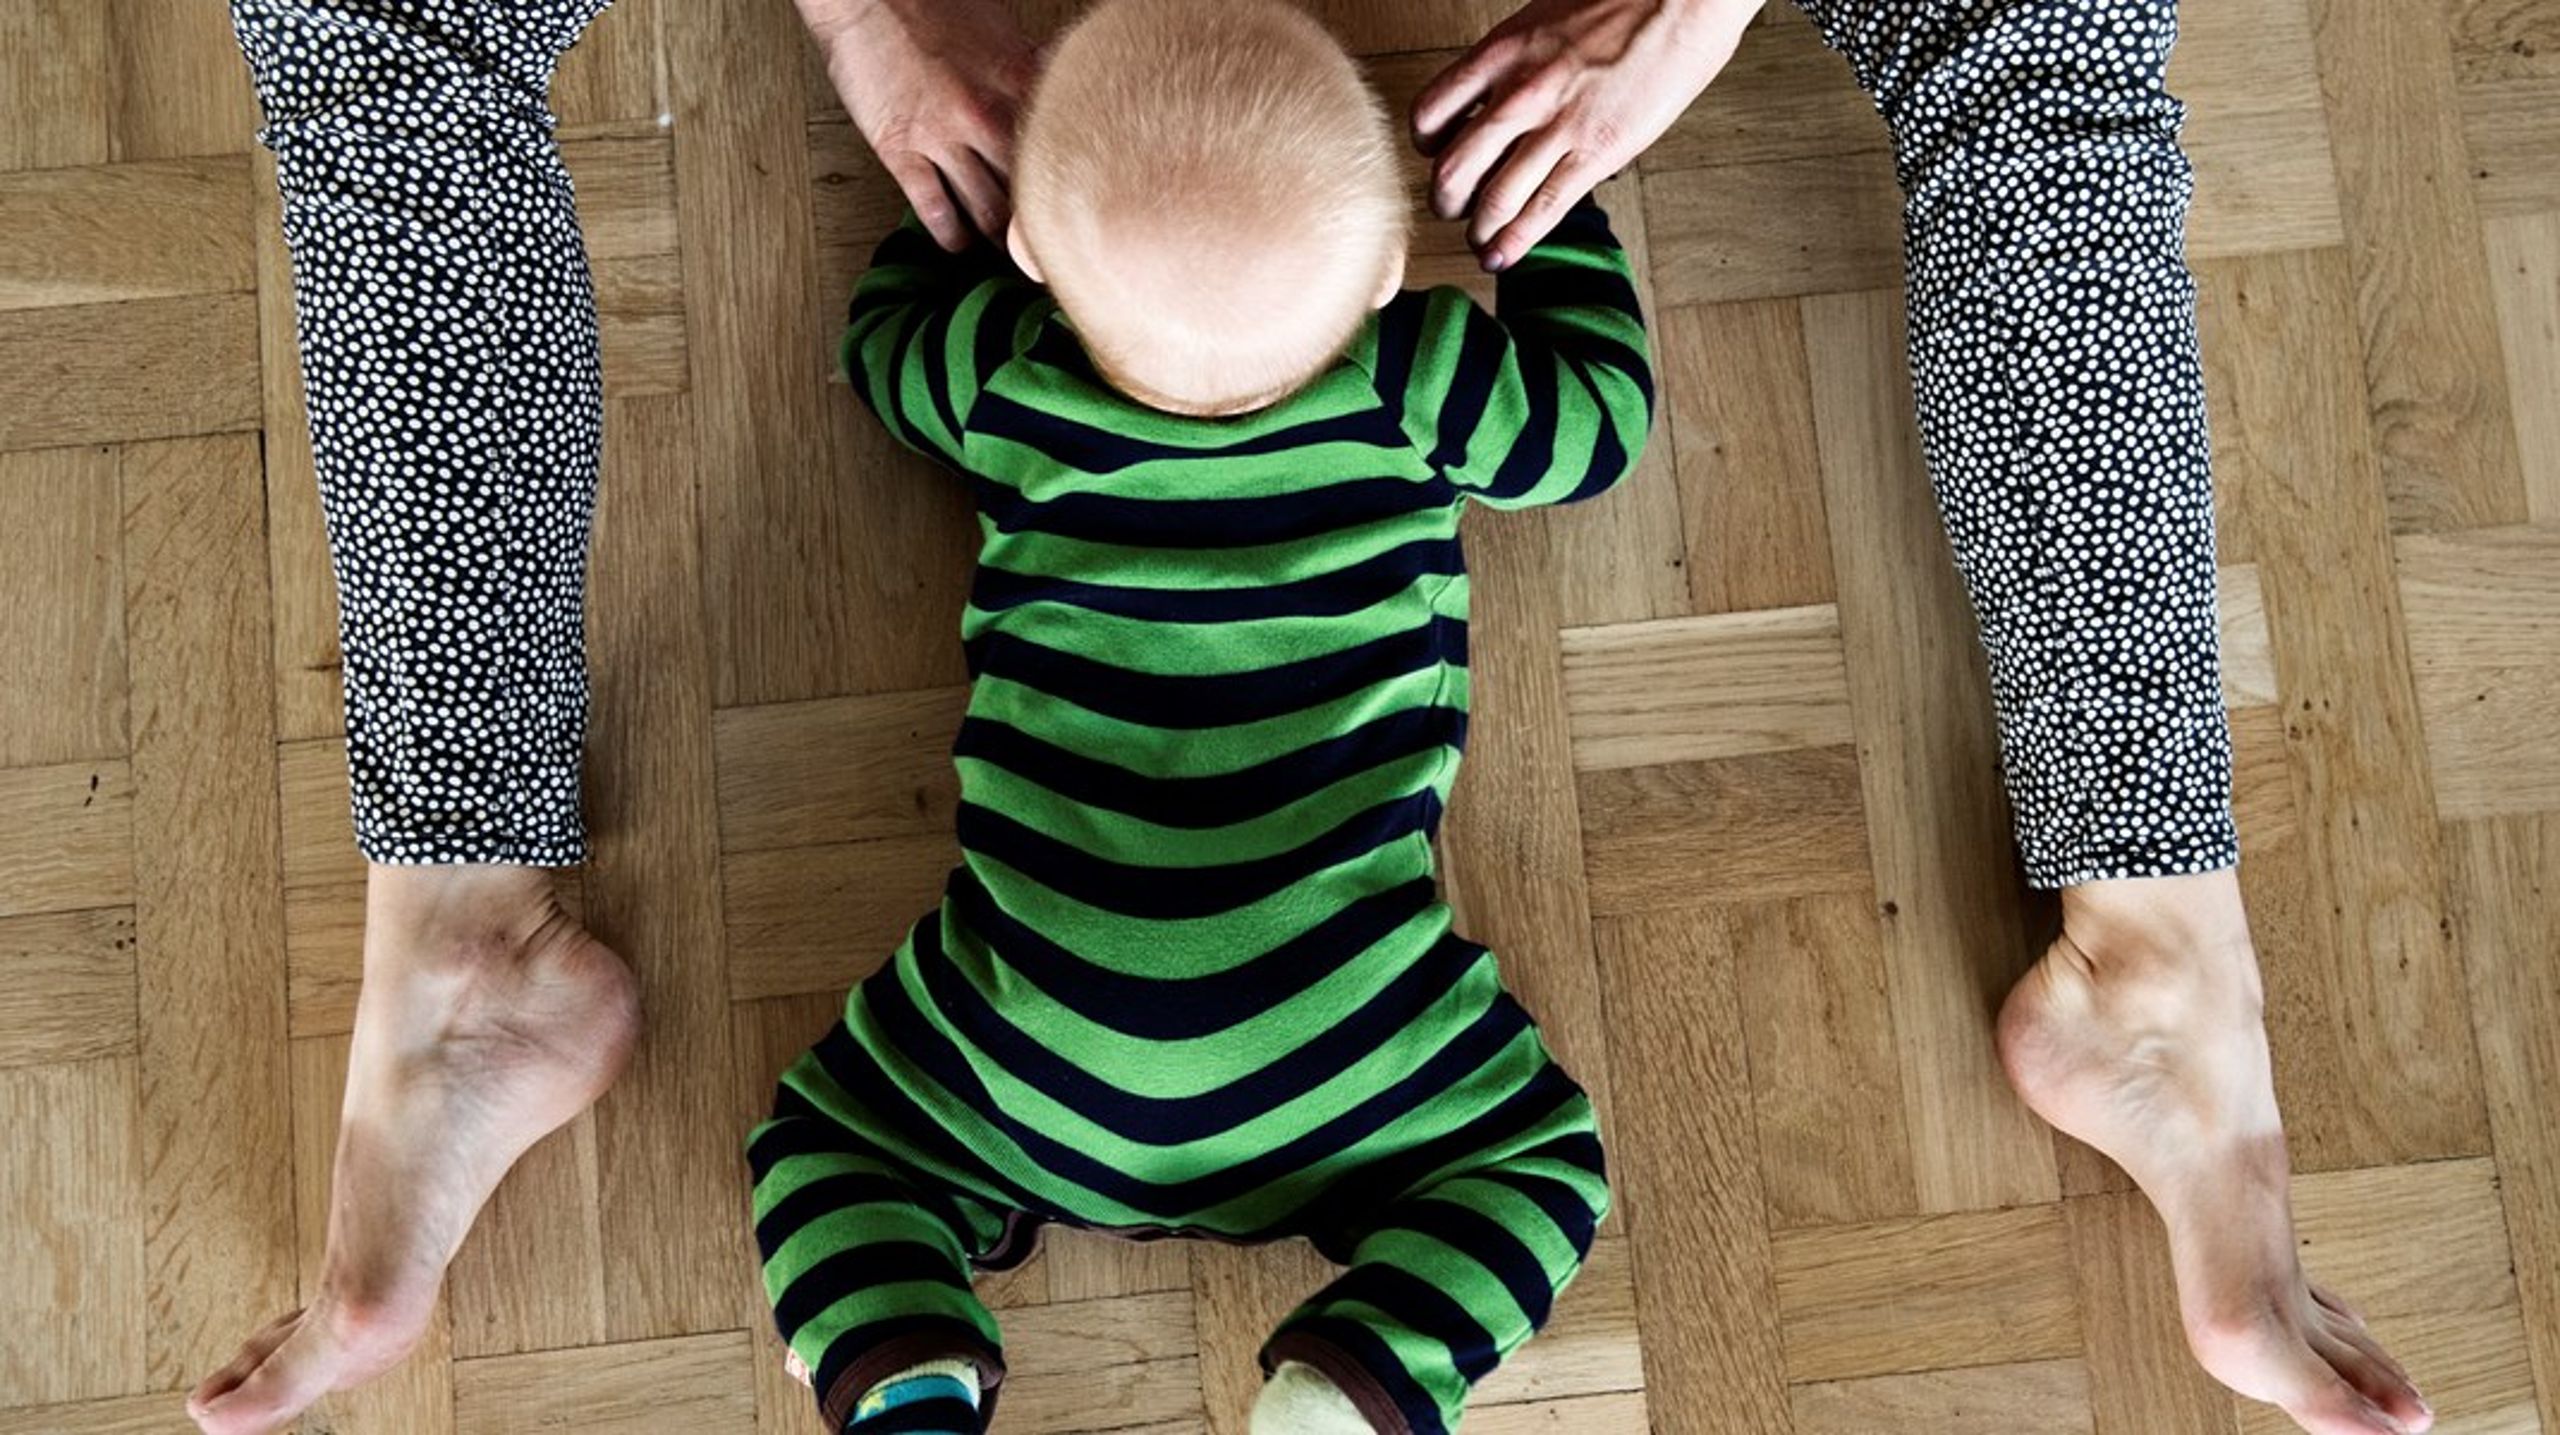 Der er intet&nbsp;videnskabeligt belæg for effekten af kiropraktisk behandling af spædbørn med kolik, skriver Simon Thor Larsen.<br>